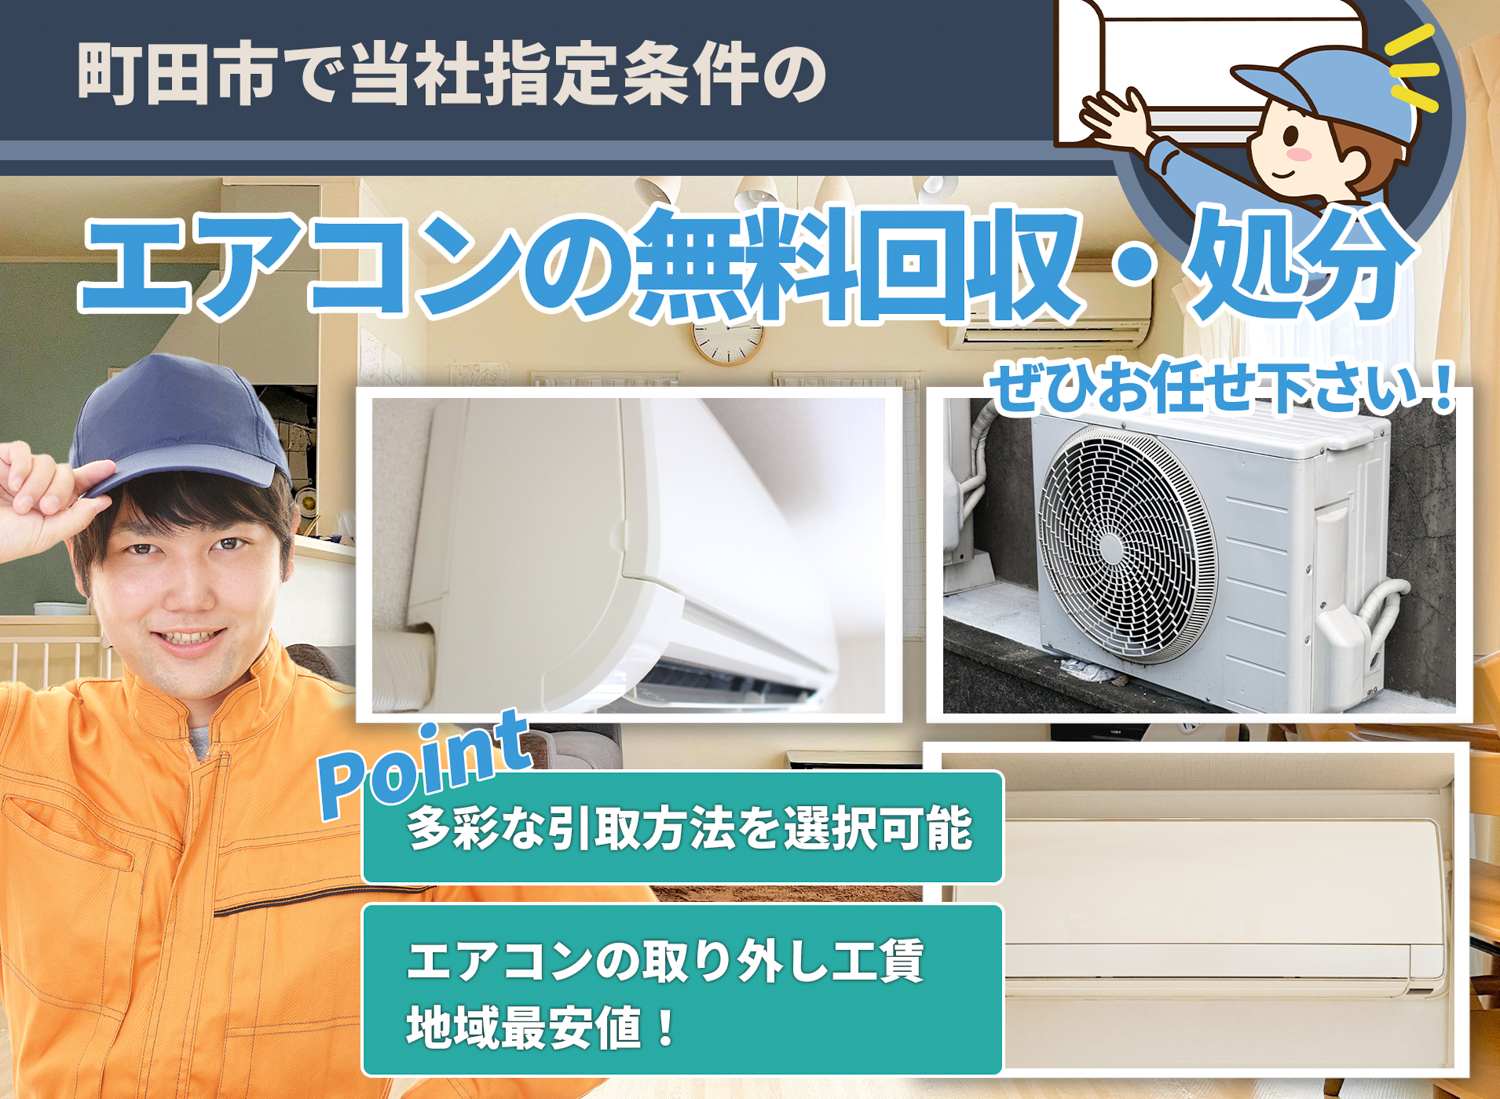 町田市で「丁寧な作業」で安心をエアコン無料回収処分隊のエアコン無料回収サービス